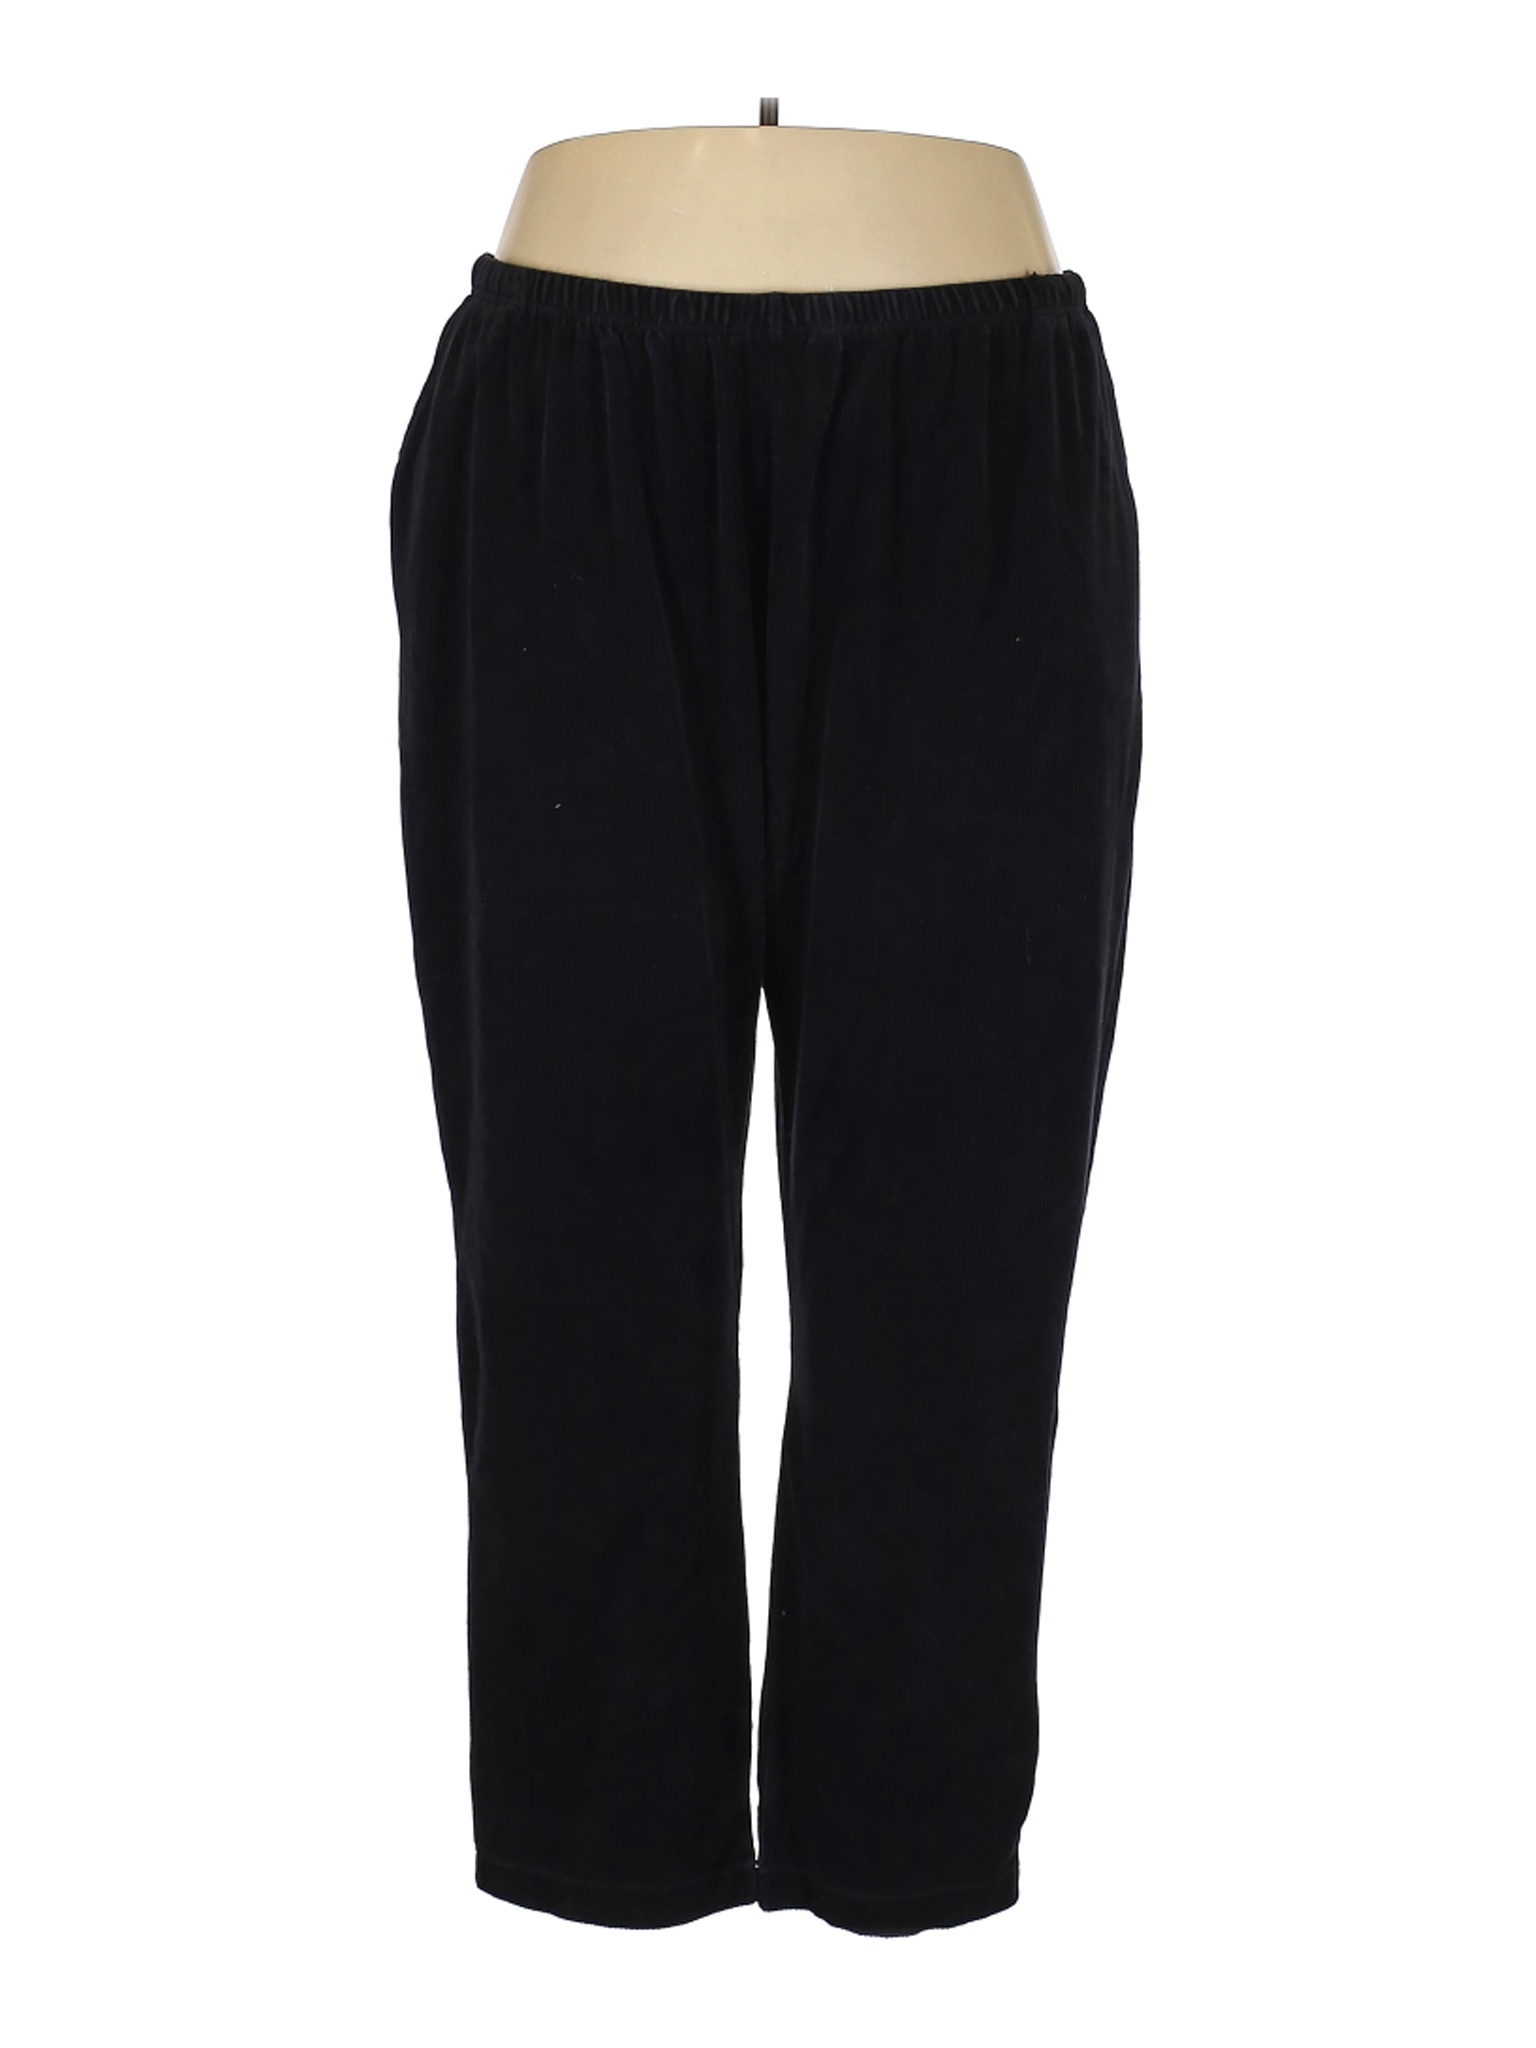 Blair Women Black Casual Pants 3X Plus | eBay